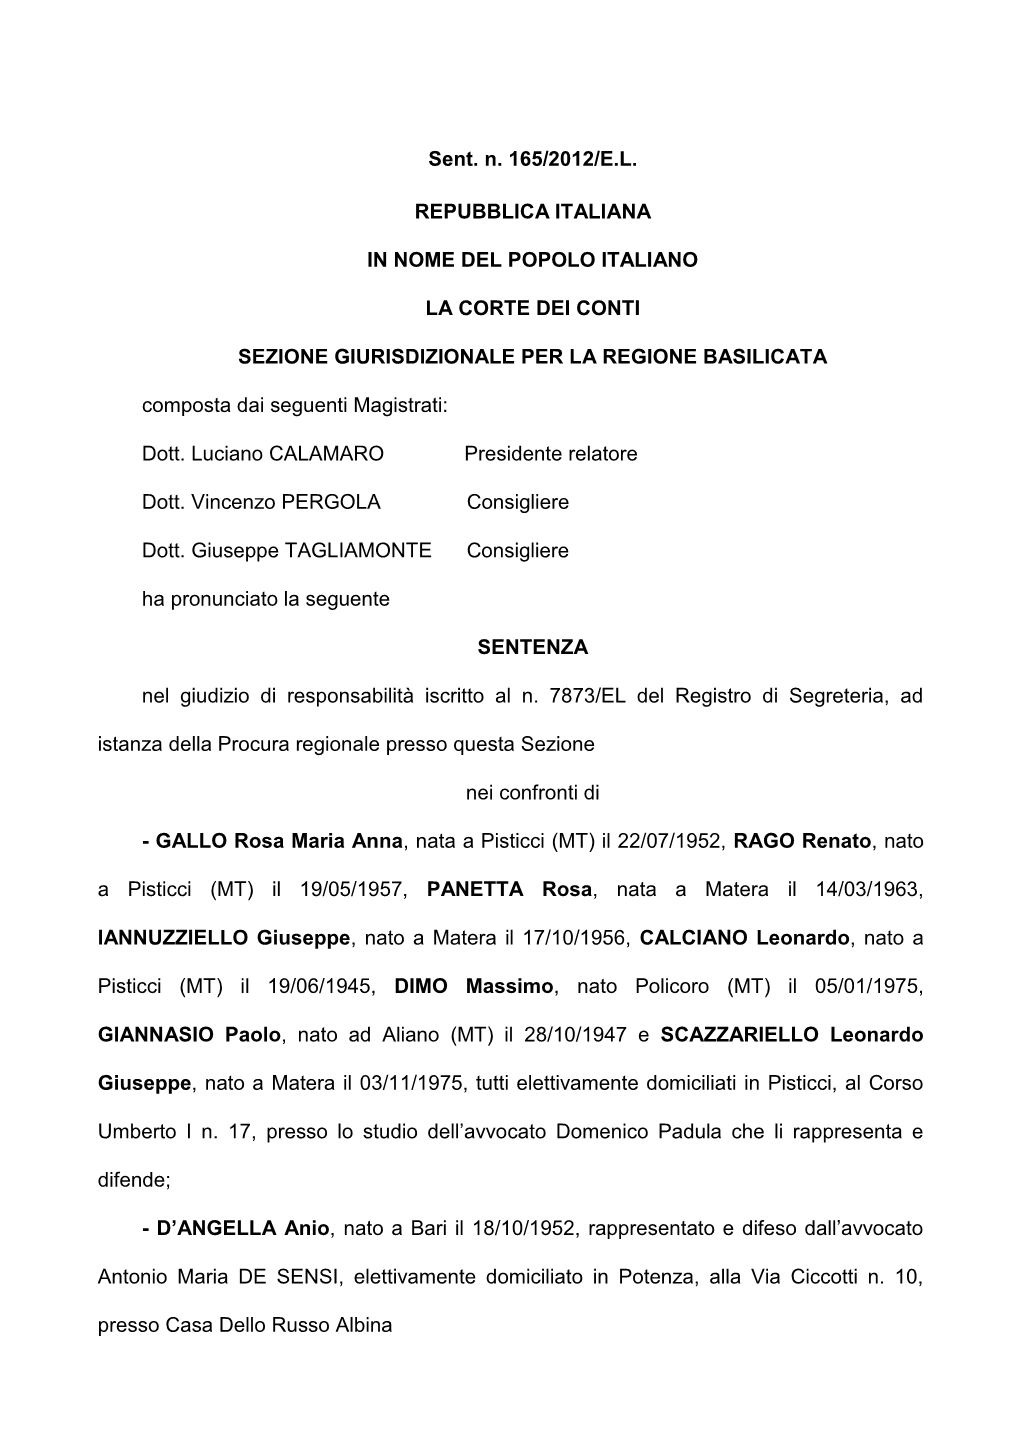 Sent. N. 165/2012/E.L. REPUBBLICA ITALIANA in NOME DEL POPOLO